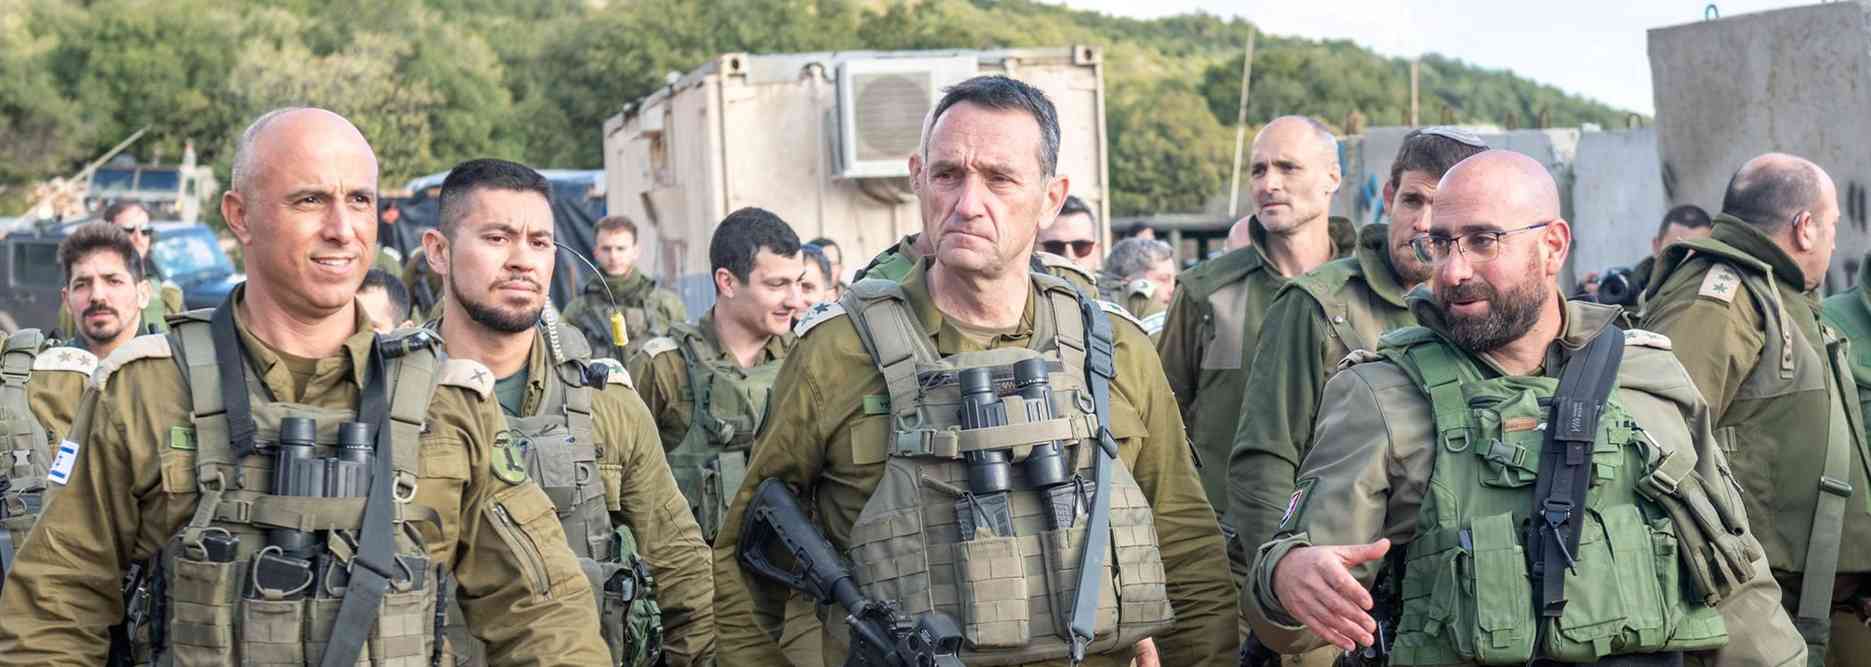 جنرالات إسرائيل يضبطون ساعاتهم على توقيت واشنطن